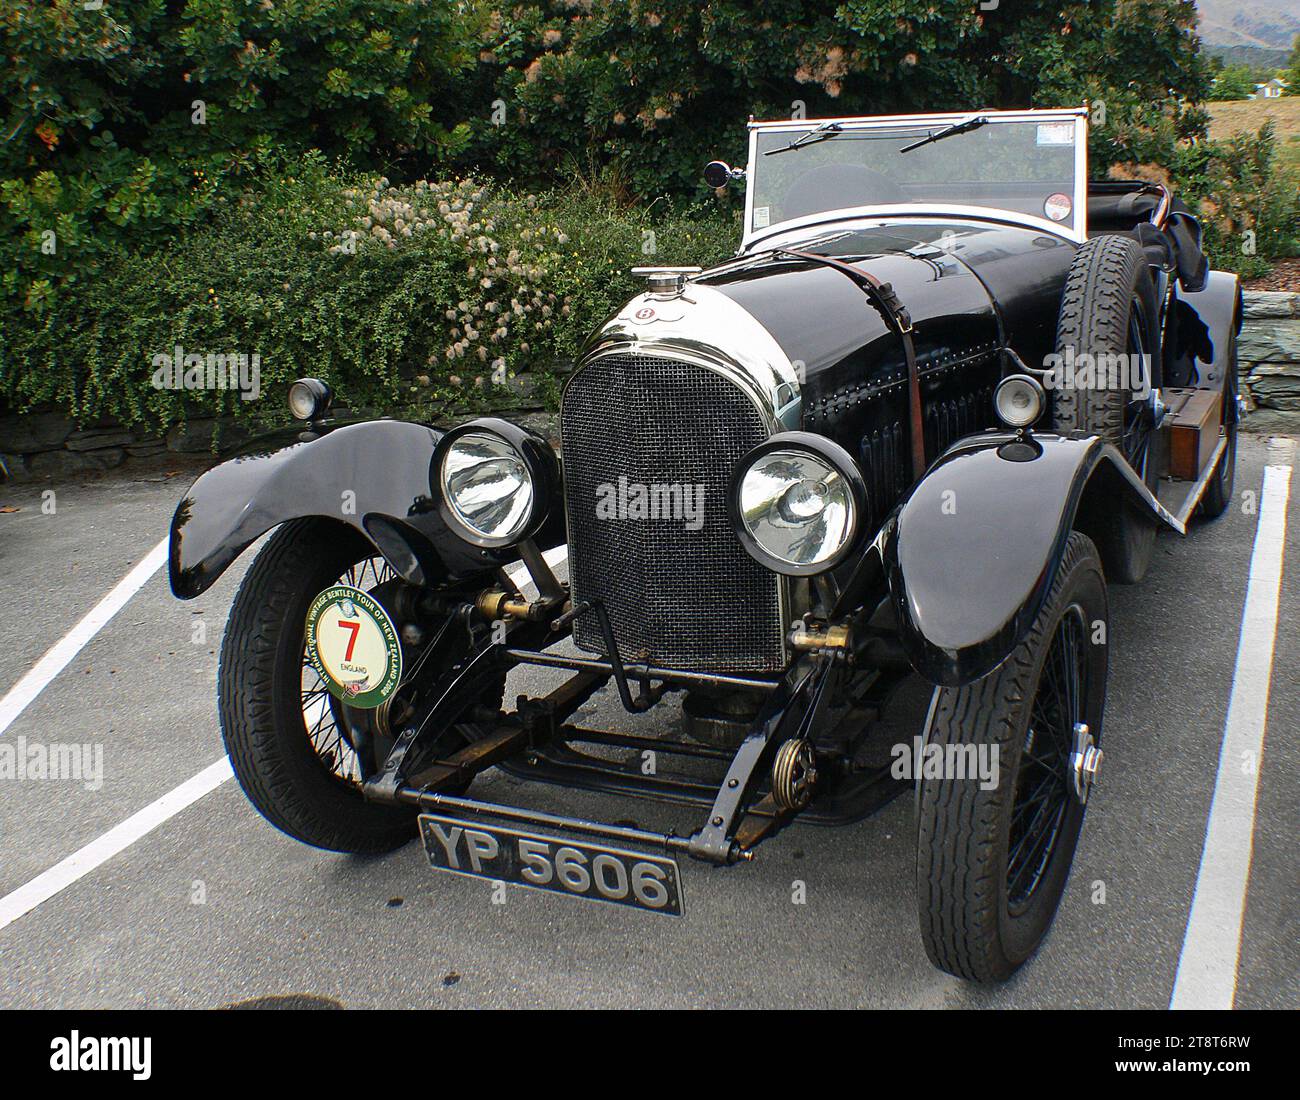 1926 3,0 LT Bentley, in 12 brevi anni, Bentley è diventata uno dei marchi più apprezzati della Gran Bretagna grazie alla sofisticatezza tecnica delle sue auto e all'invidiabile record nelle gare su lunghe distanze, tra cui la vittoria della 24 ore di le Mans cinque volte Foto Stock